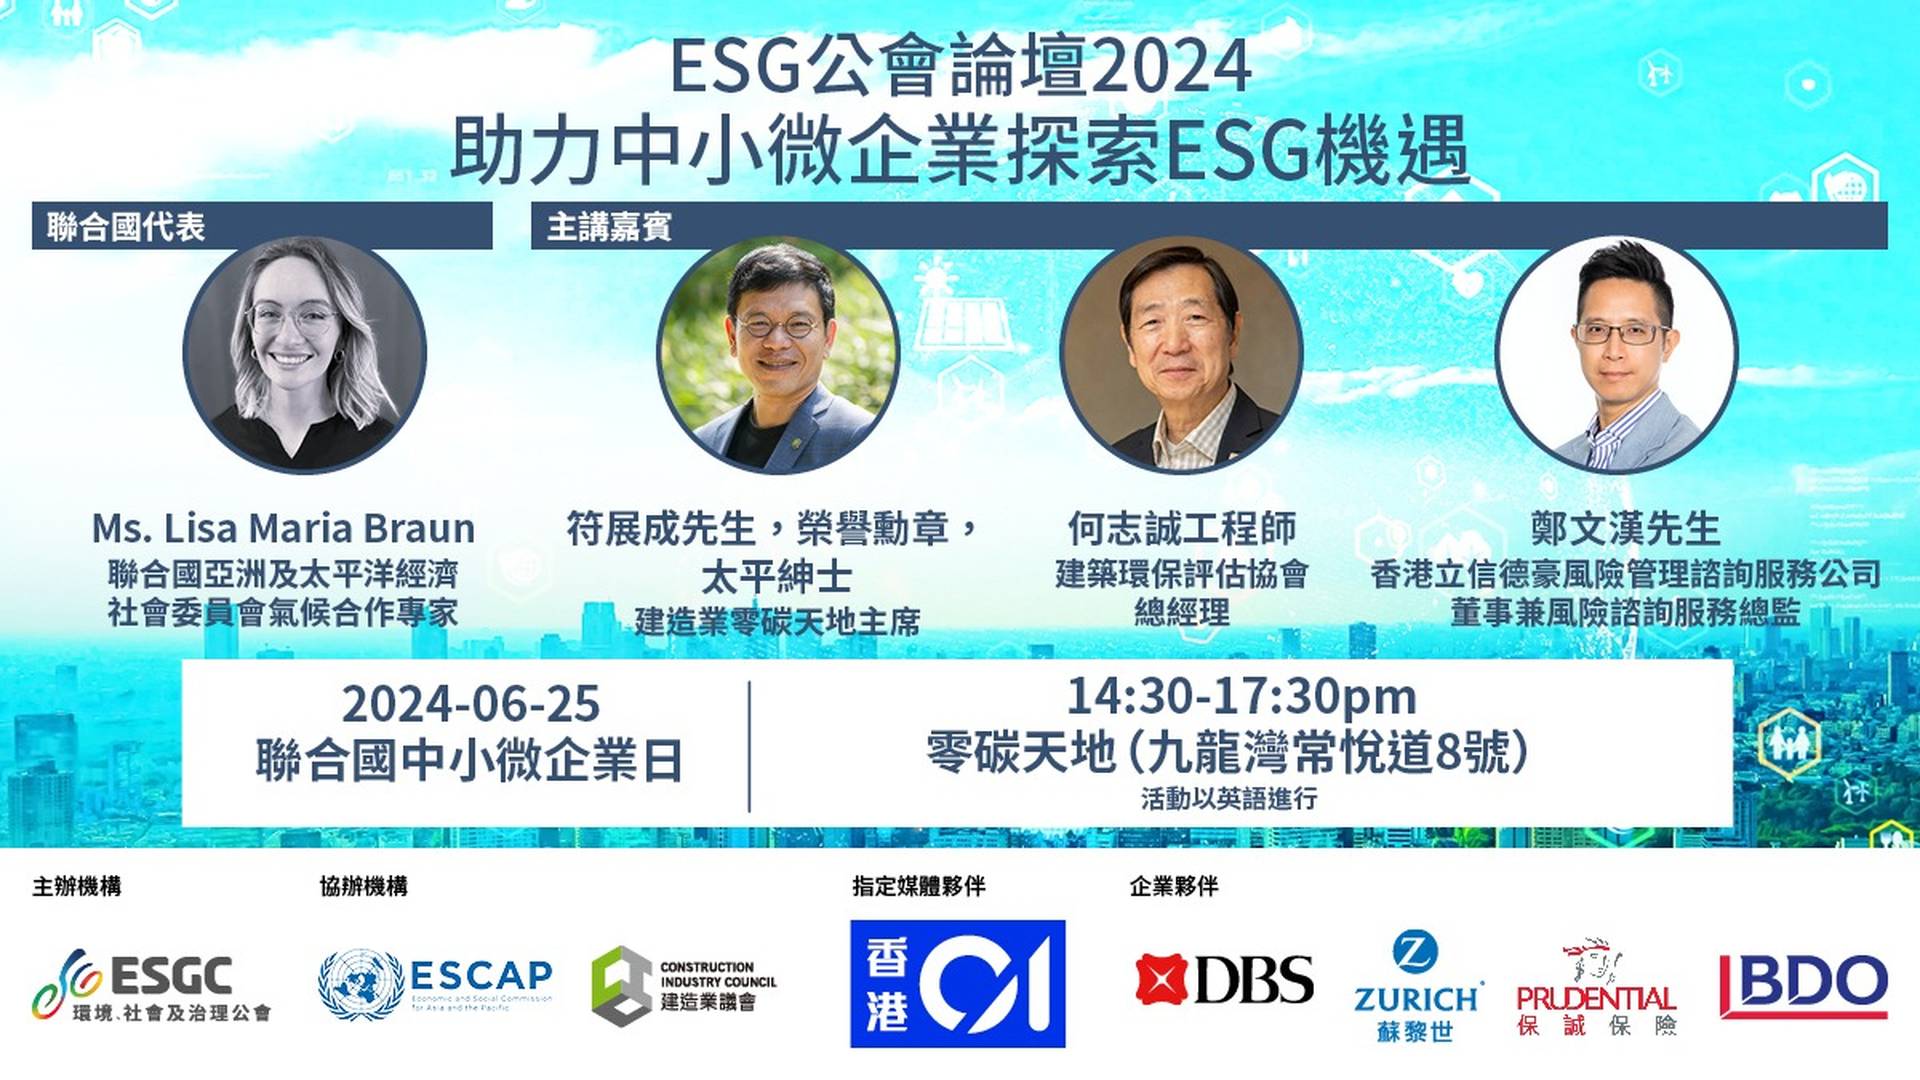 ESG 公會論壇2024 : 助力中小微企業探索 ESG 機遇 